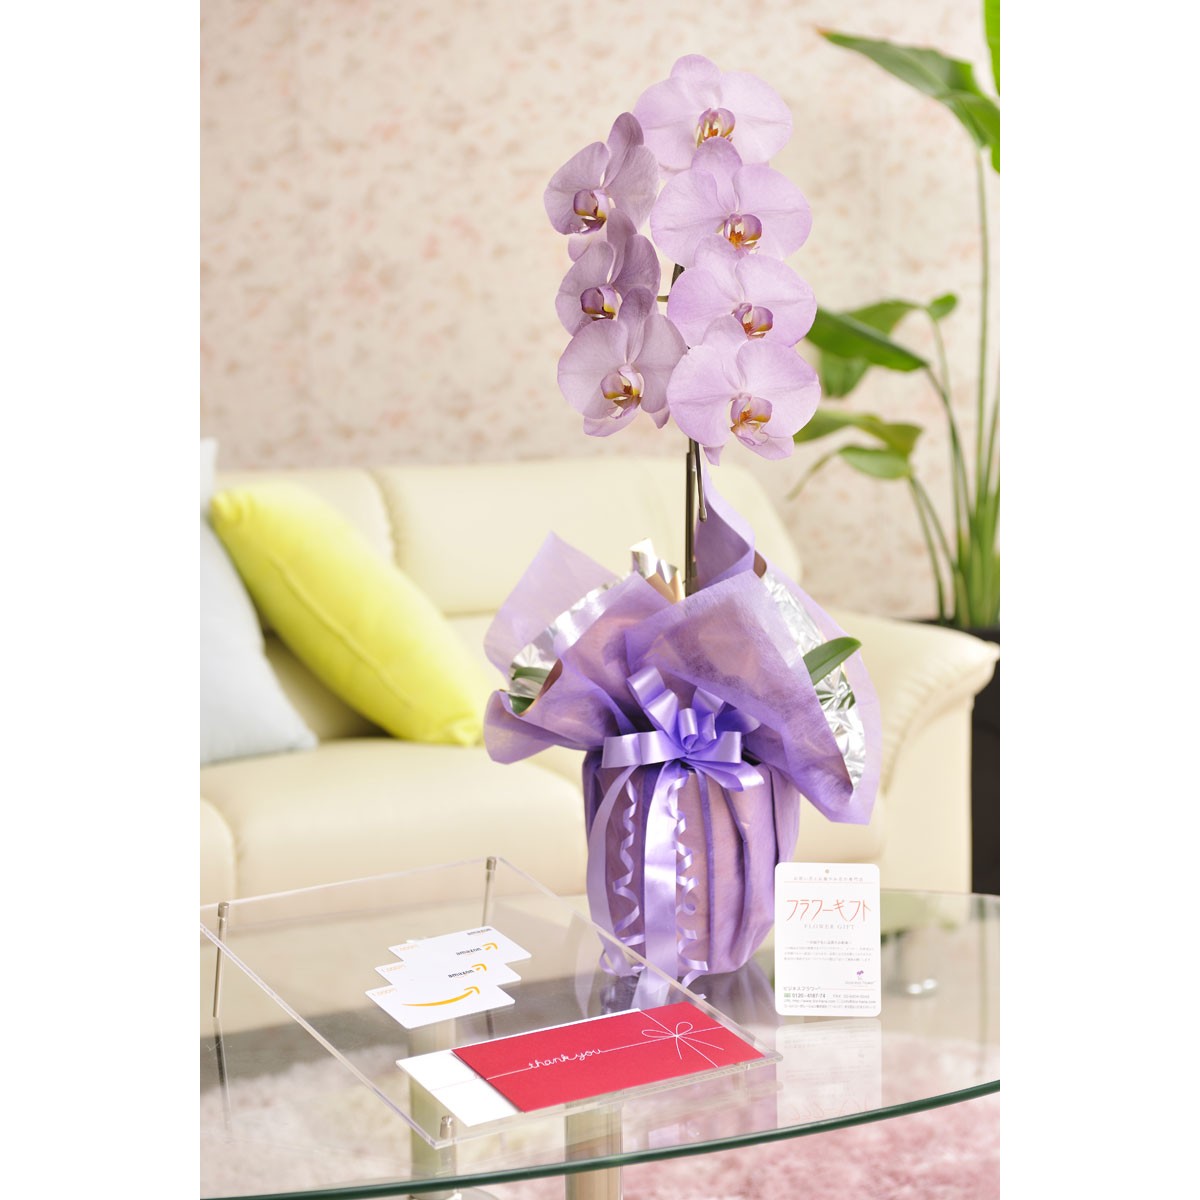  цветок . подарок. комплект можно выбрать цветок цвет. цвет . бабочка орхидея .- irodori - 1 шт. .( холод цвет серия ). товар талон (Amazon подарочный сертификат 3000 иен )[ стоимость доставки * карта * упаковка бесплатный ]